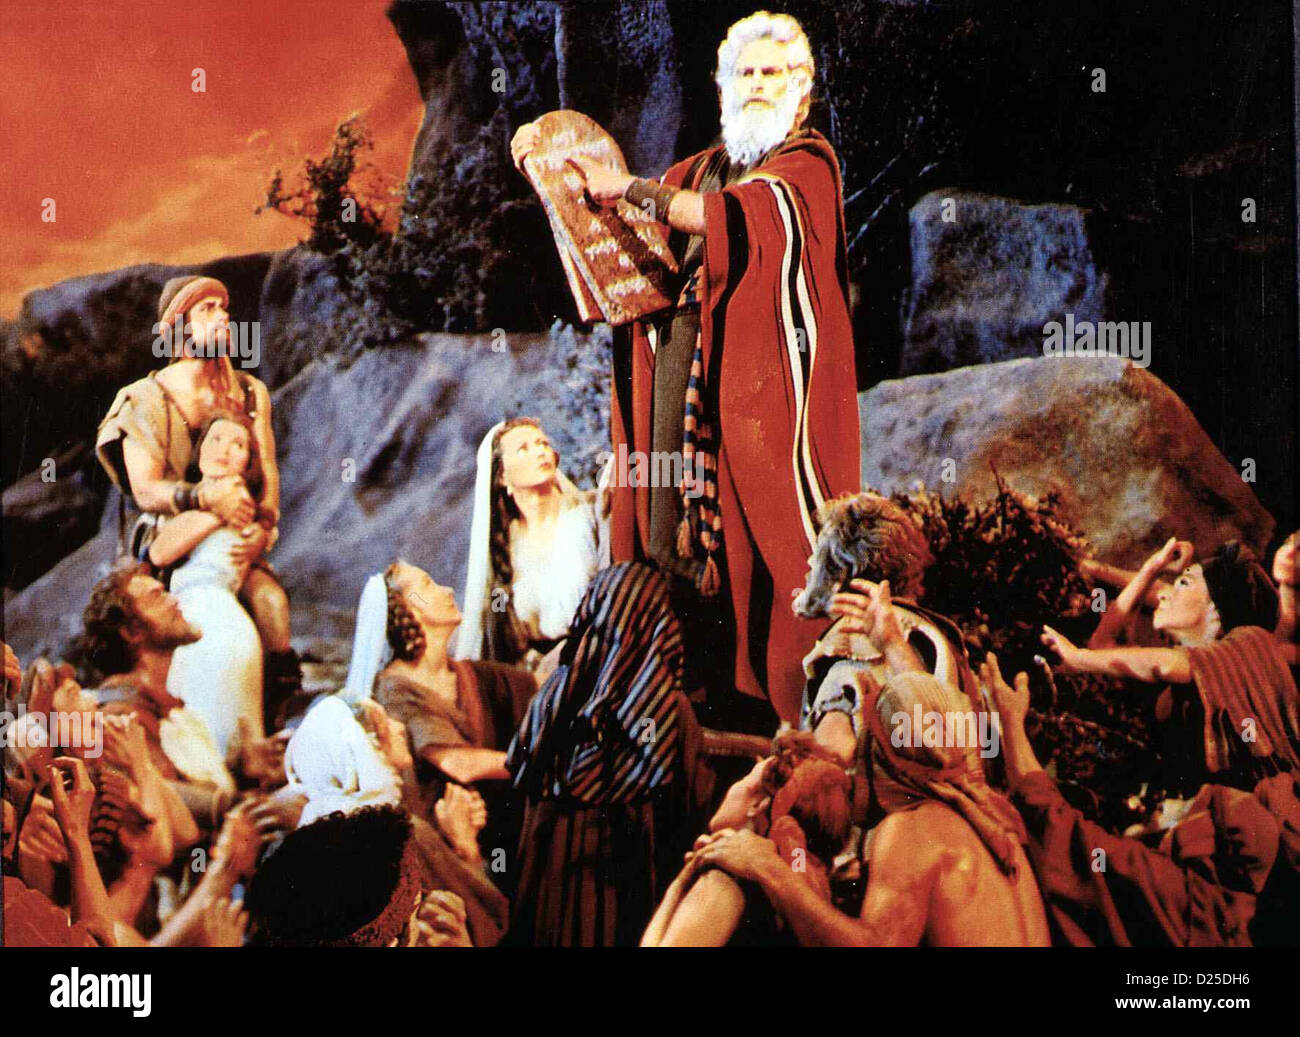 Die Zehn Gebote  Ten Commandments,  Charlton Heston Unterwegs empfaengt Moses (Charlton Heston,m) zehn Gebote Gottes, nach Stock Photo